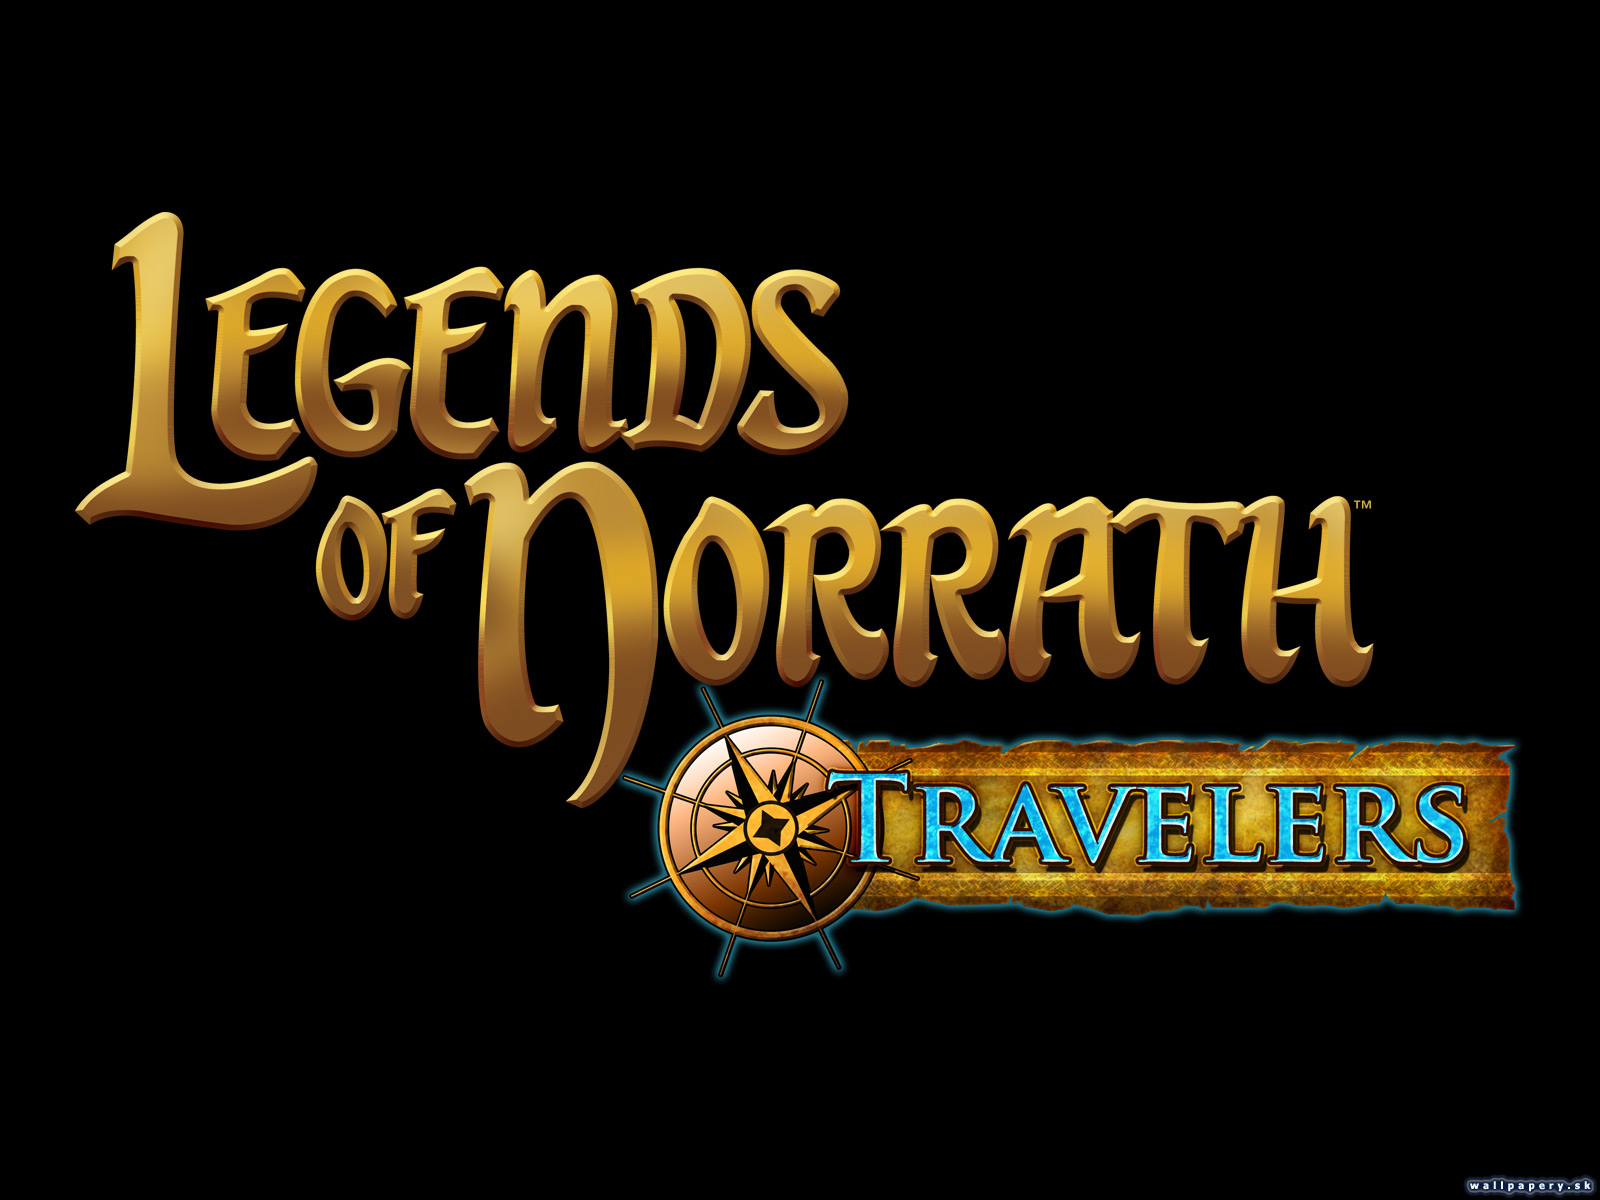 Legends of Norrath: Travelers - wallpaper 1